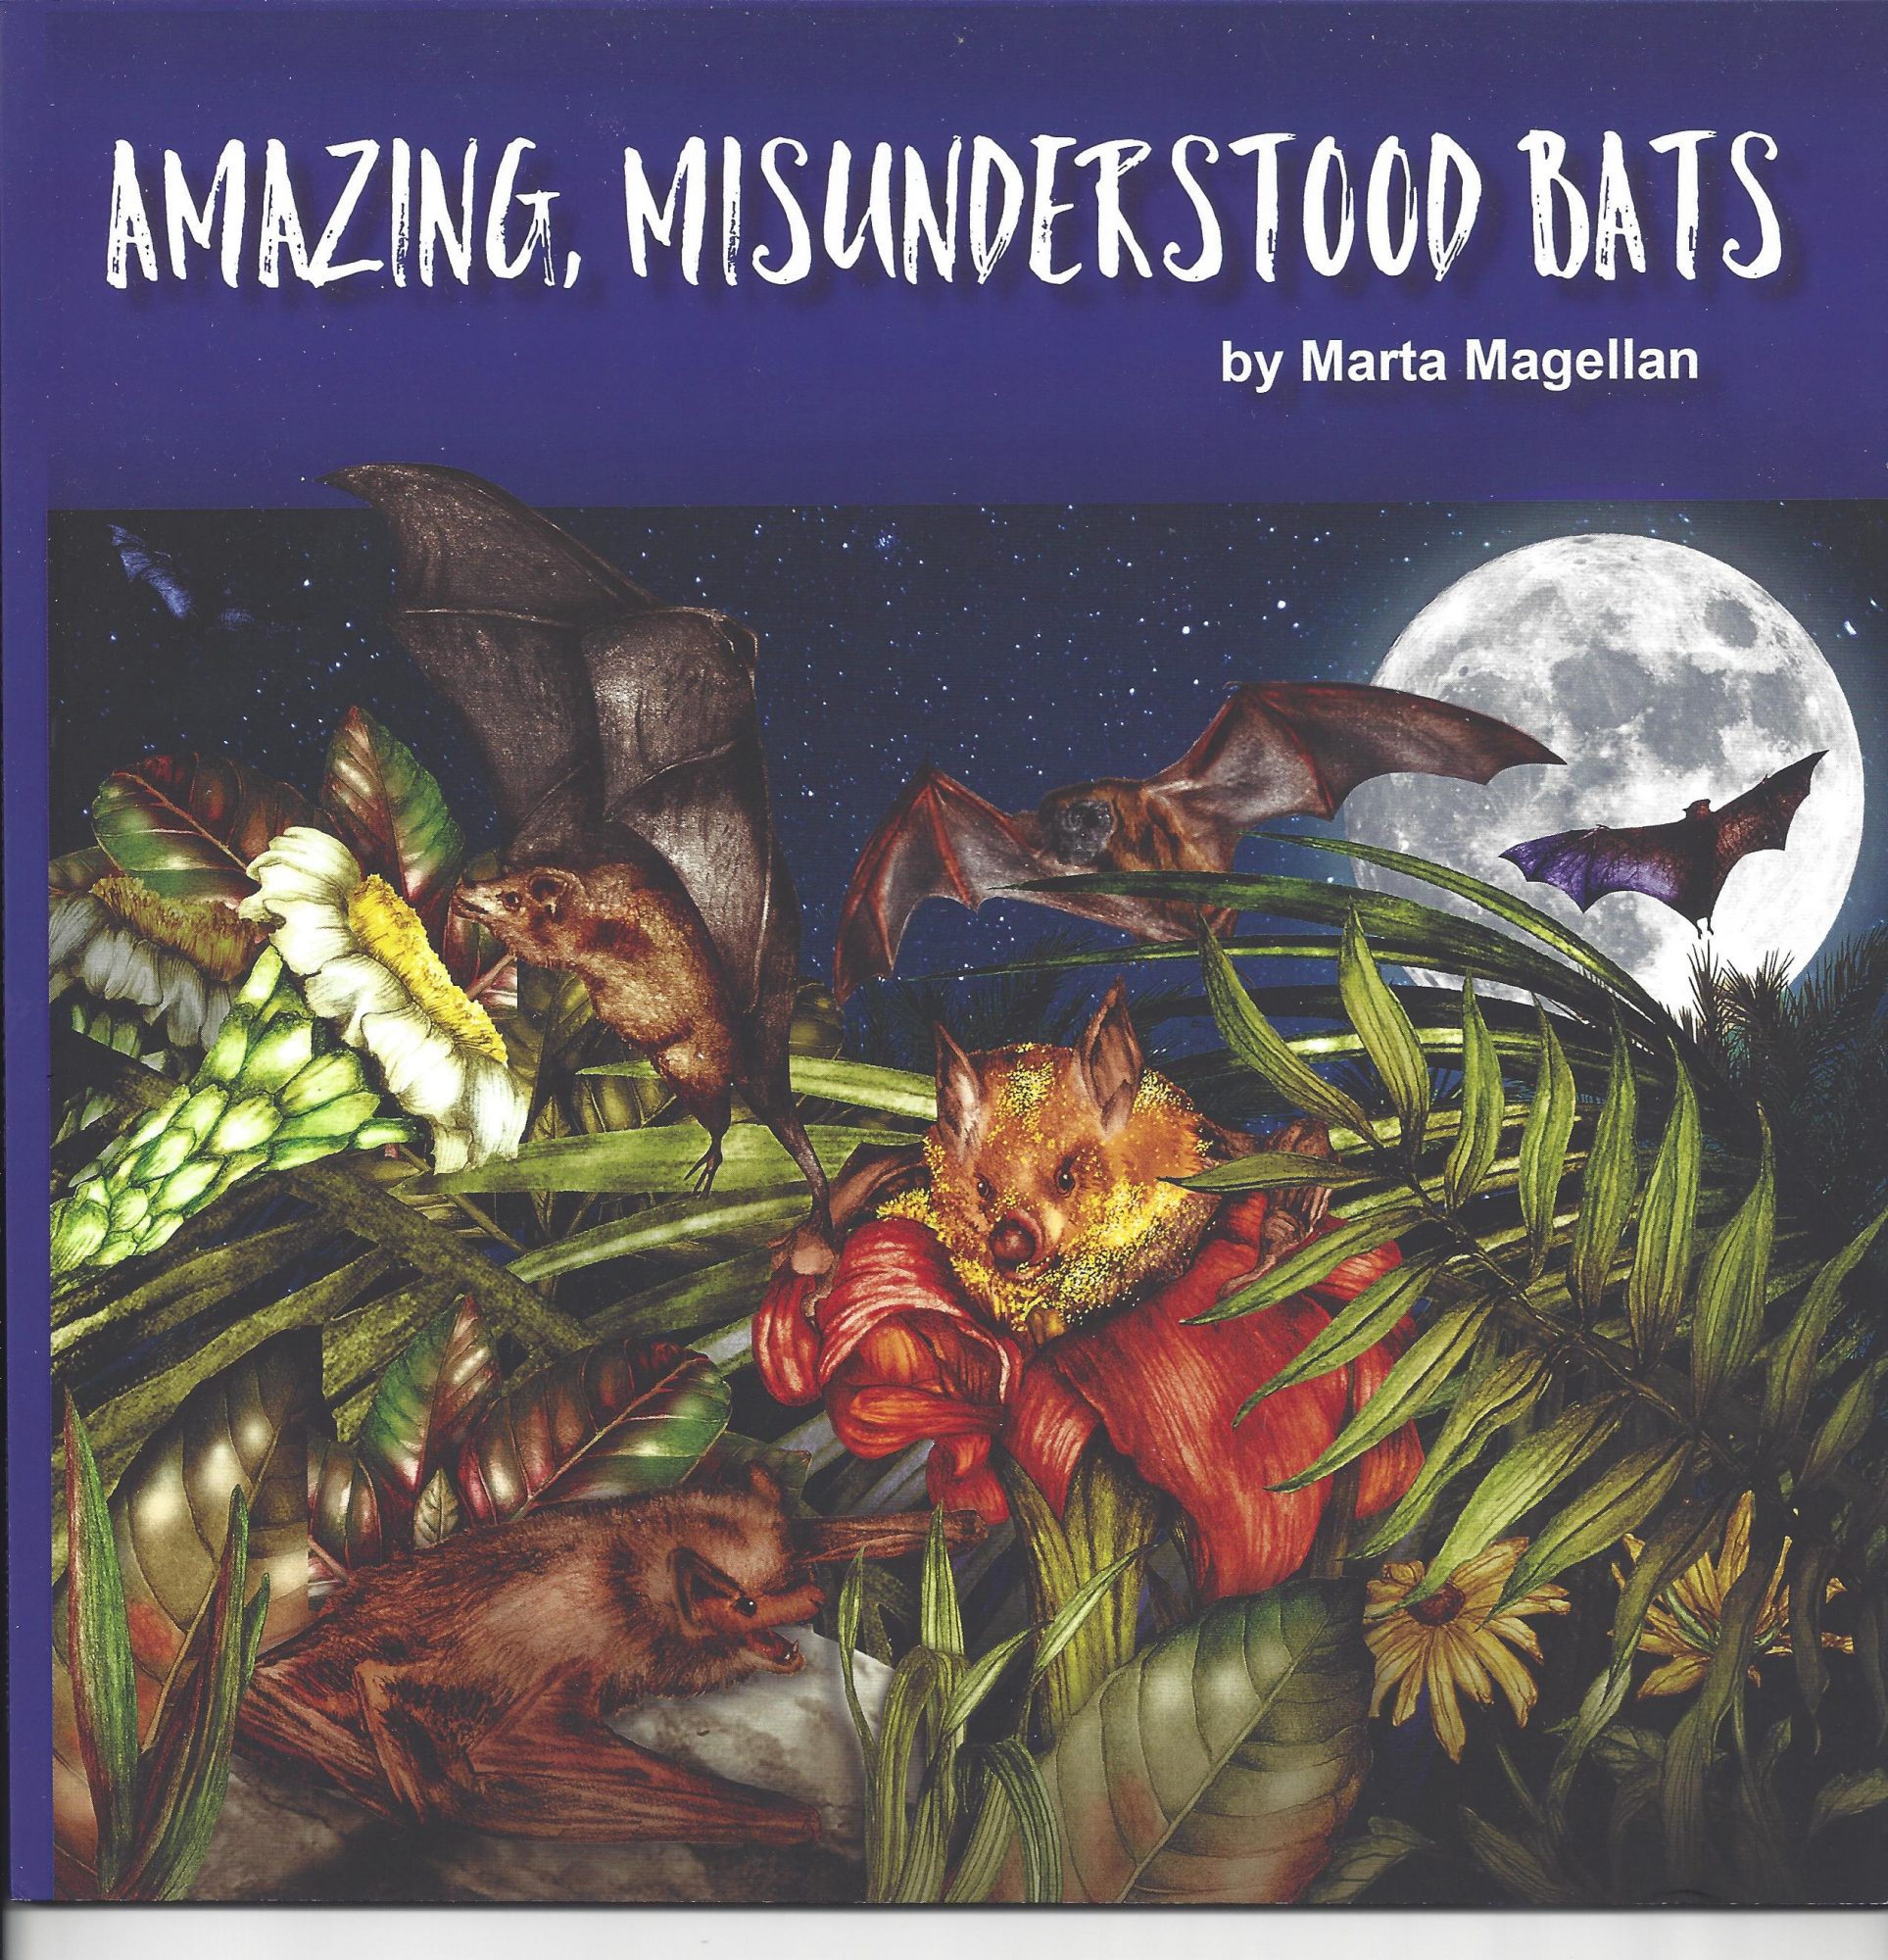 Amazing, Misunderstood Bats